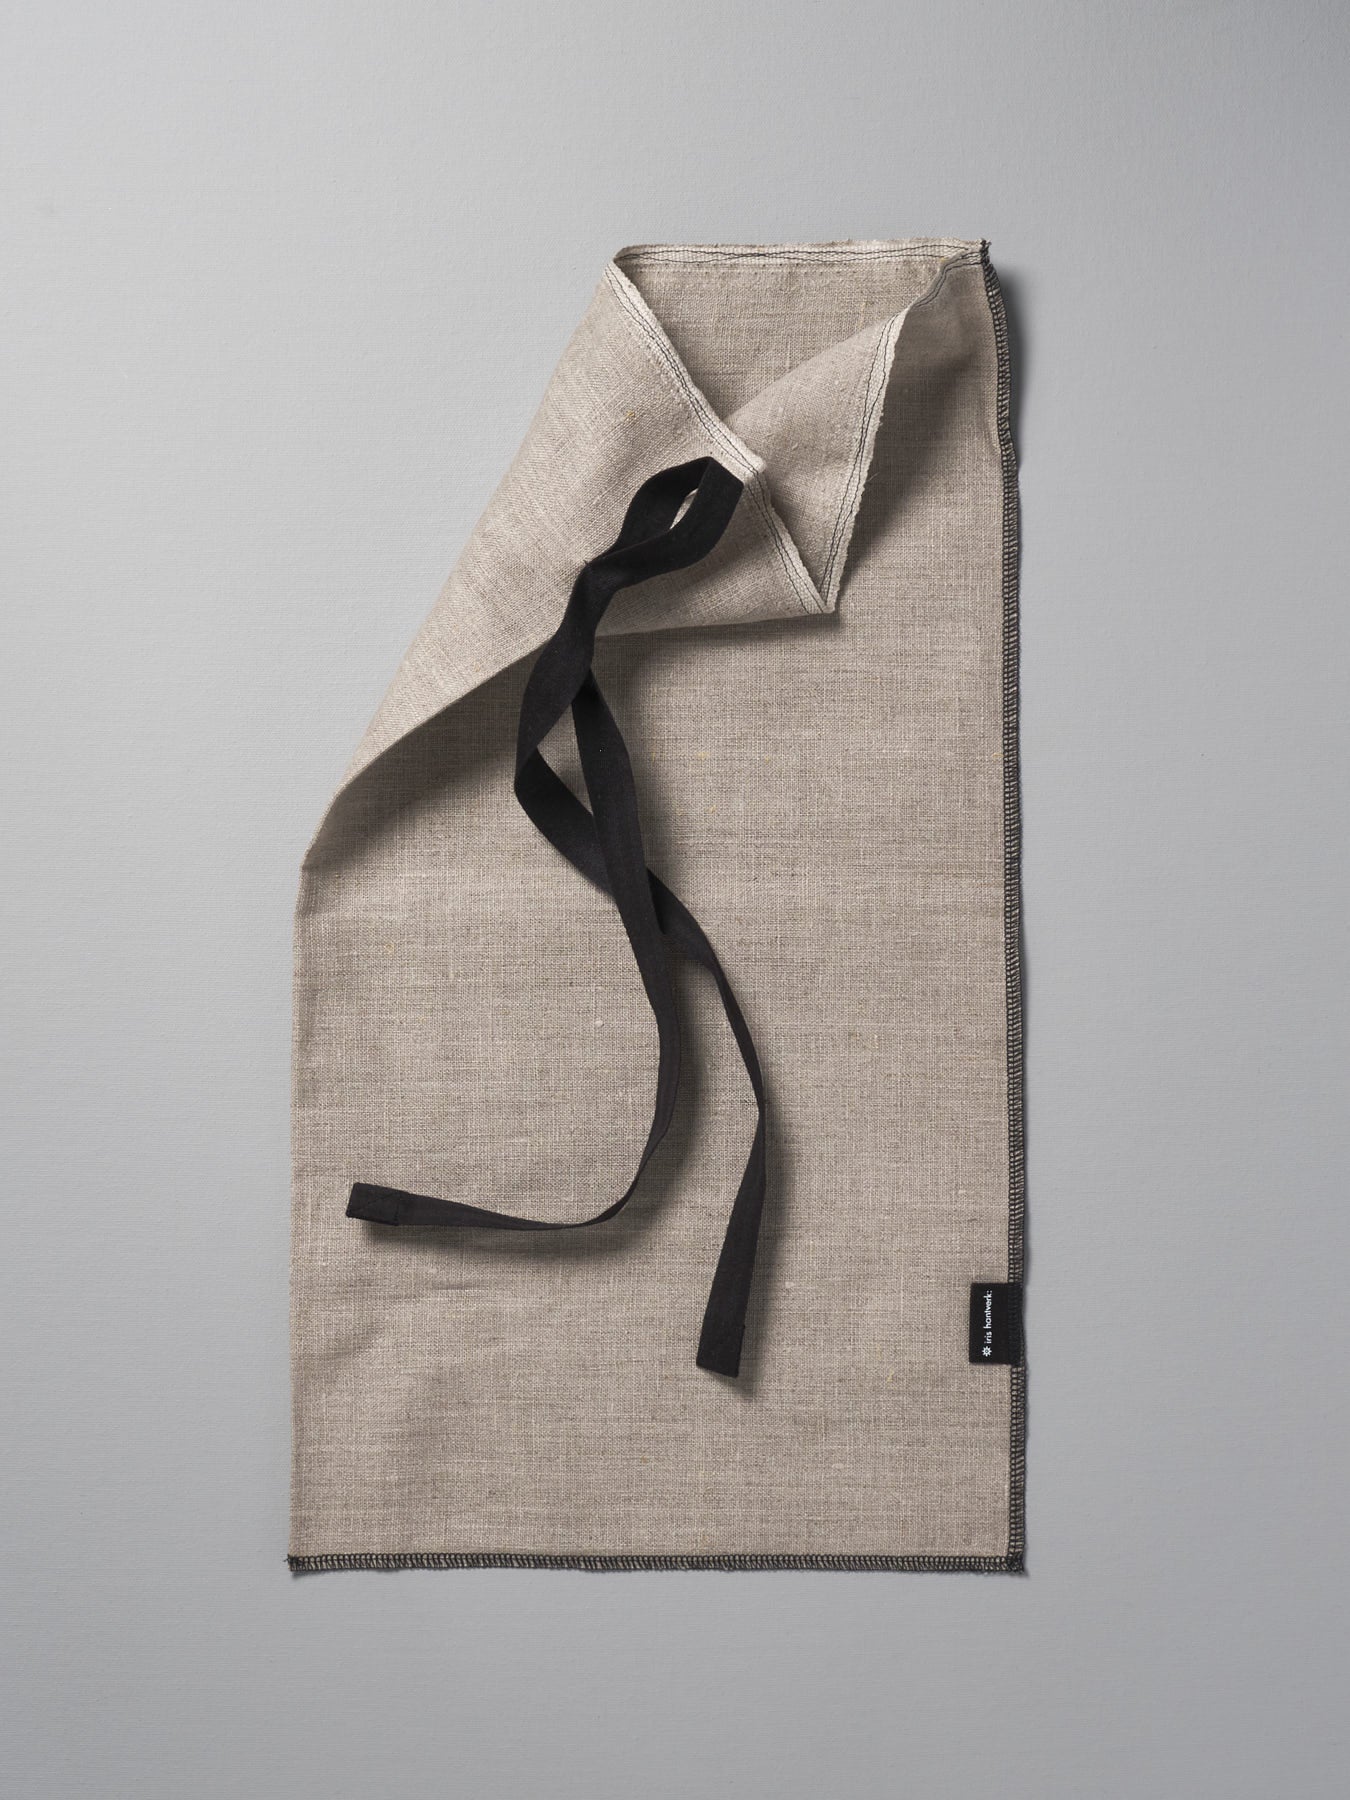 A Bread Bag - Linen towel with a black ribbon on it by Iris Hantverk.